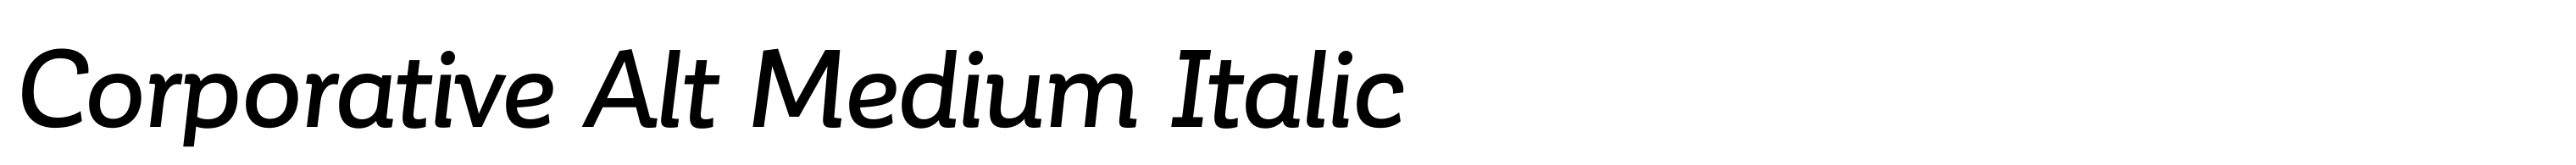 Corporative Alt Medium Italic